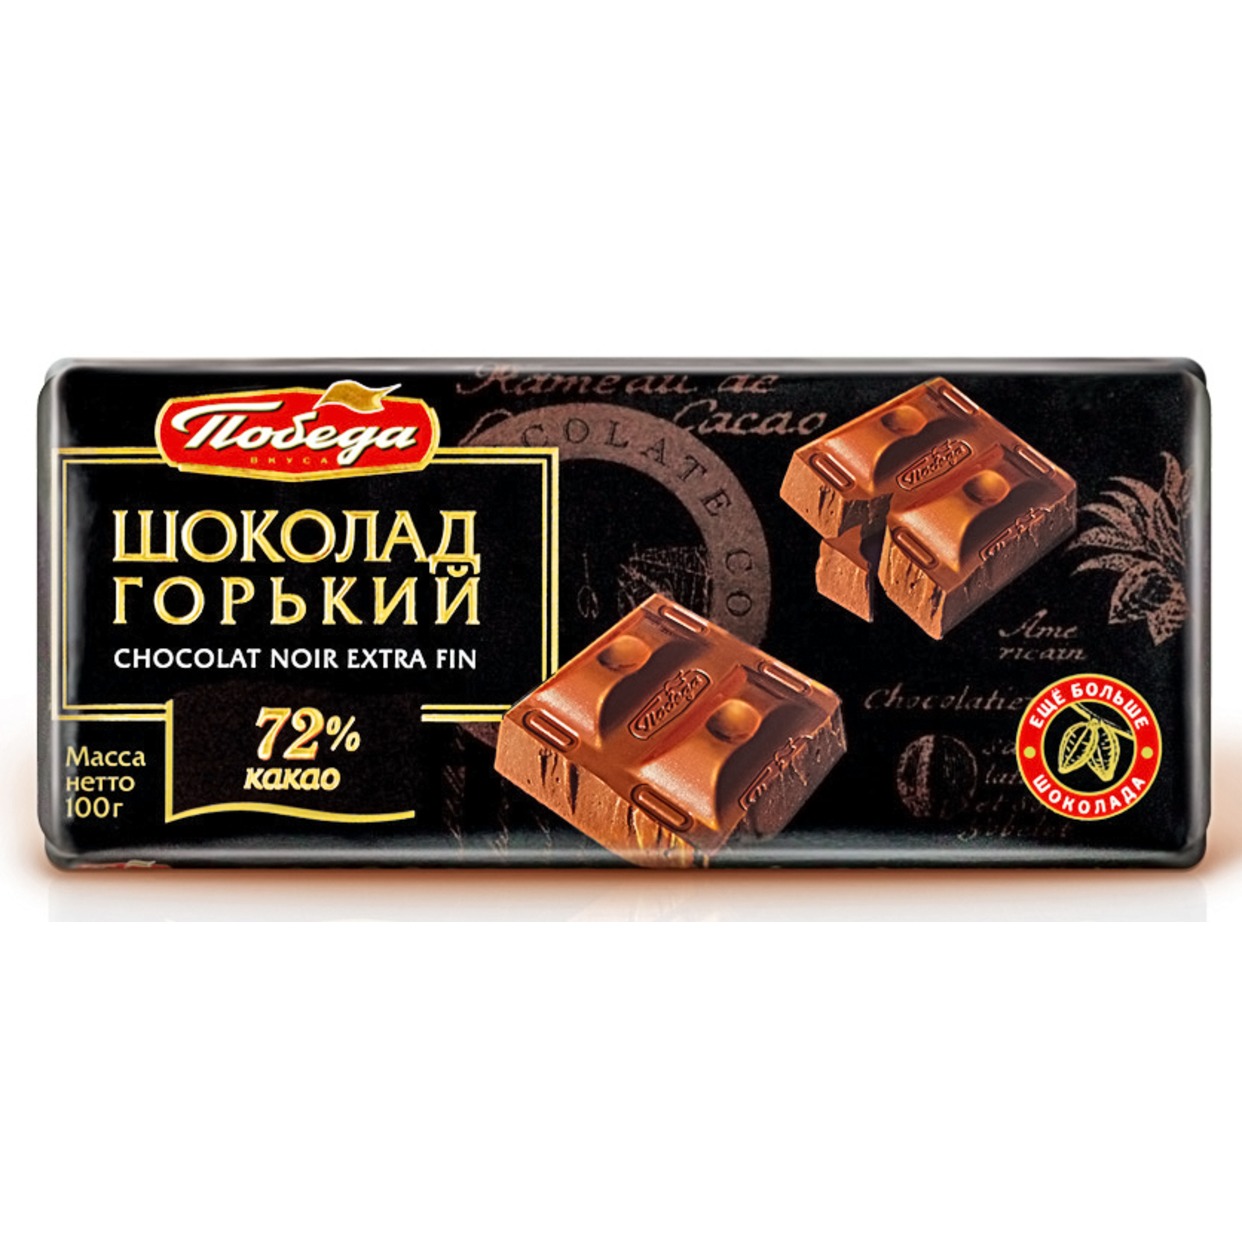 Шоколад Победа горький 72% какао 100 г по акции в Пятерочке